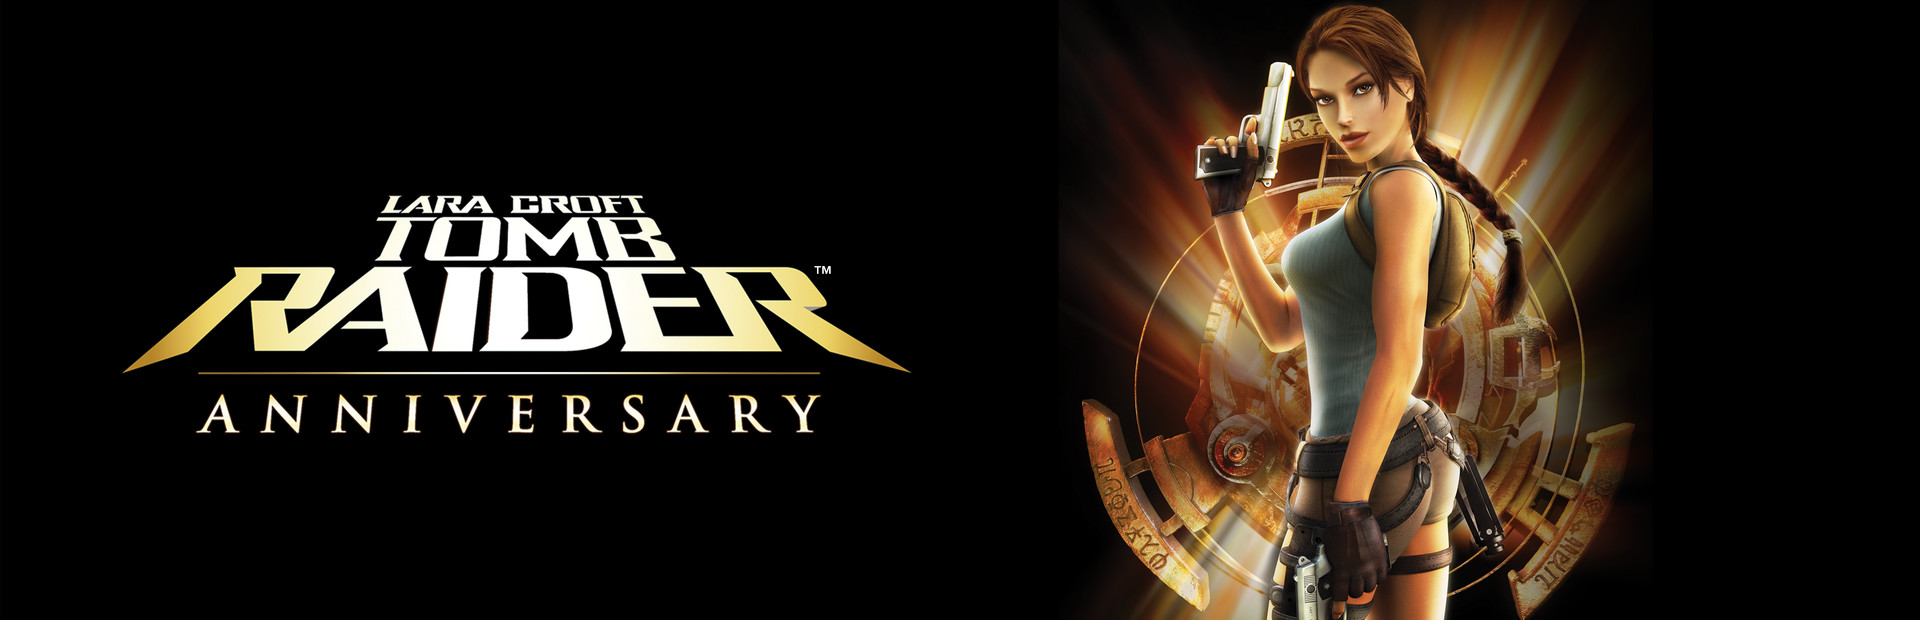 Tomb Raider: Anniversary cover image